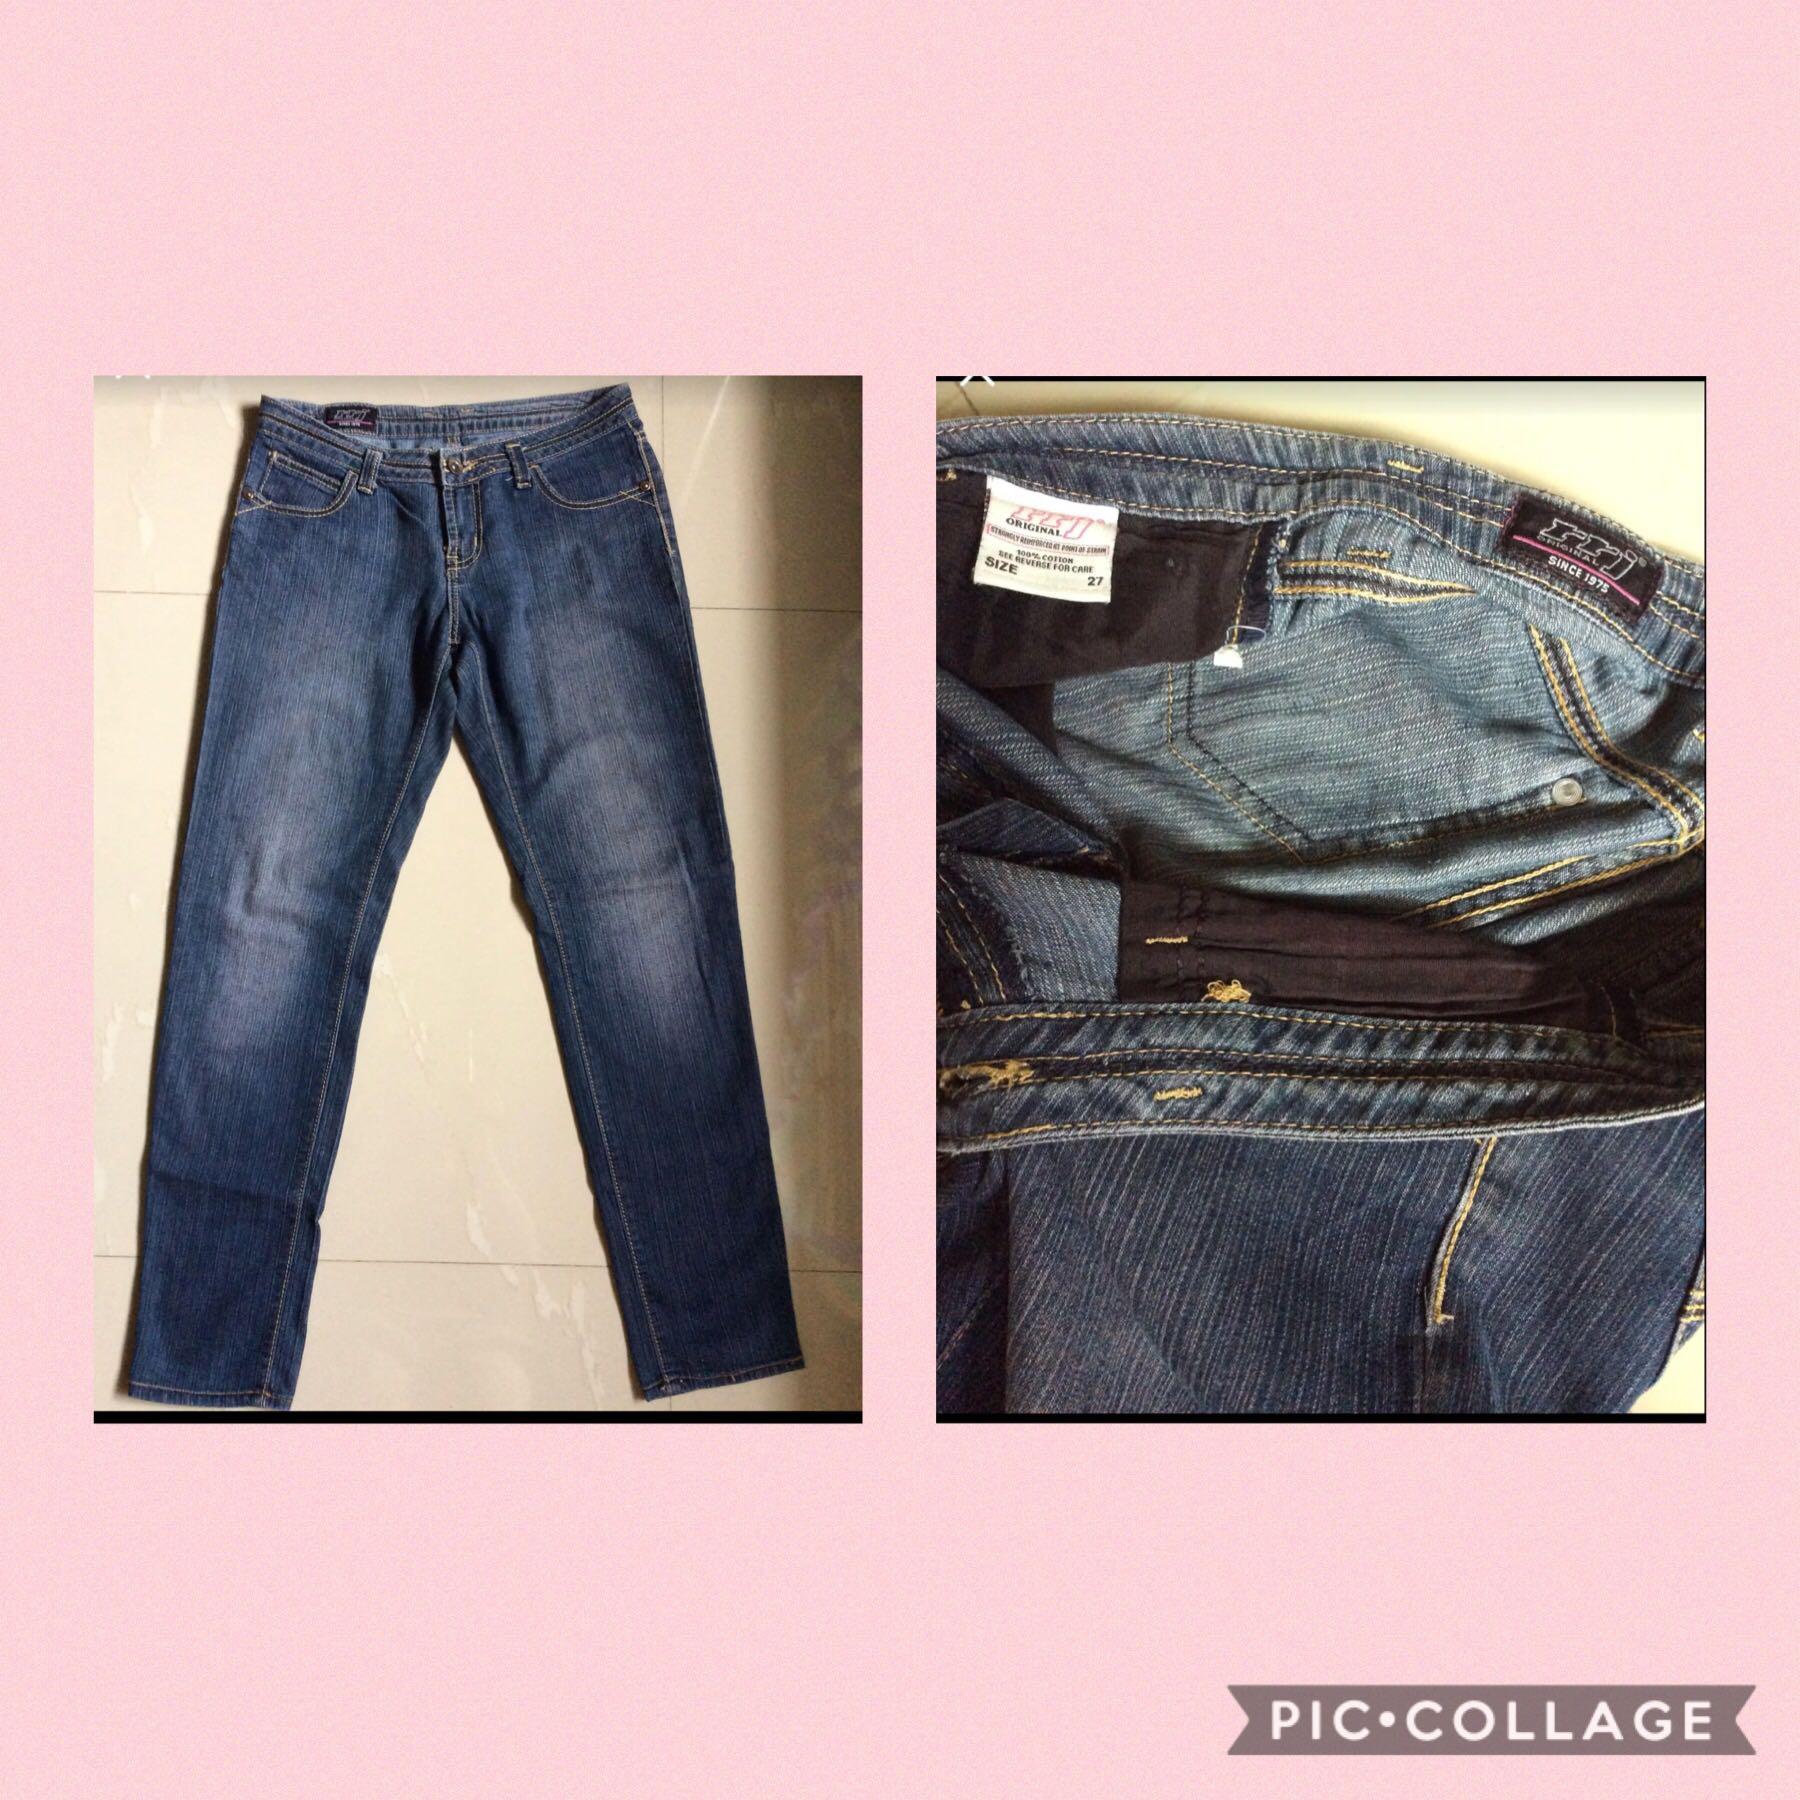 rrj jeans price